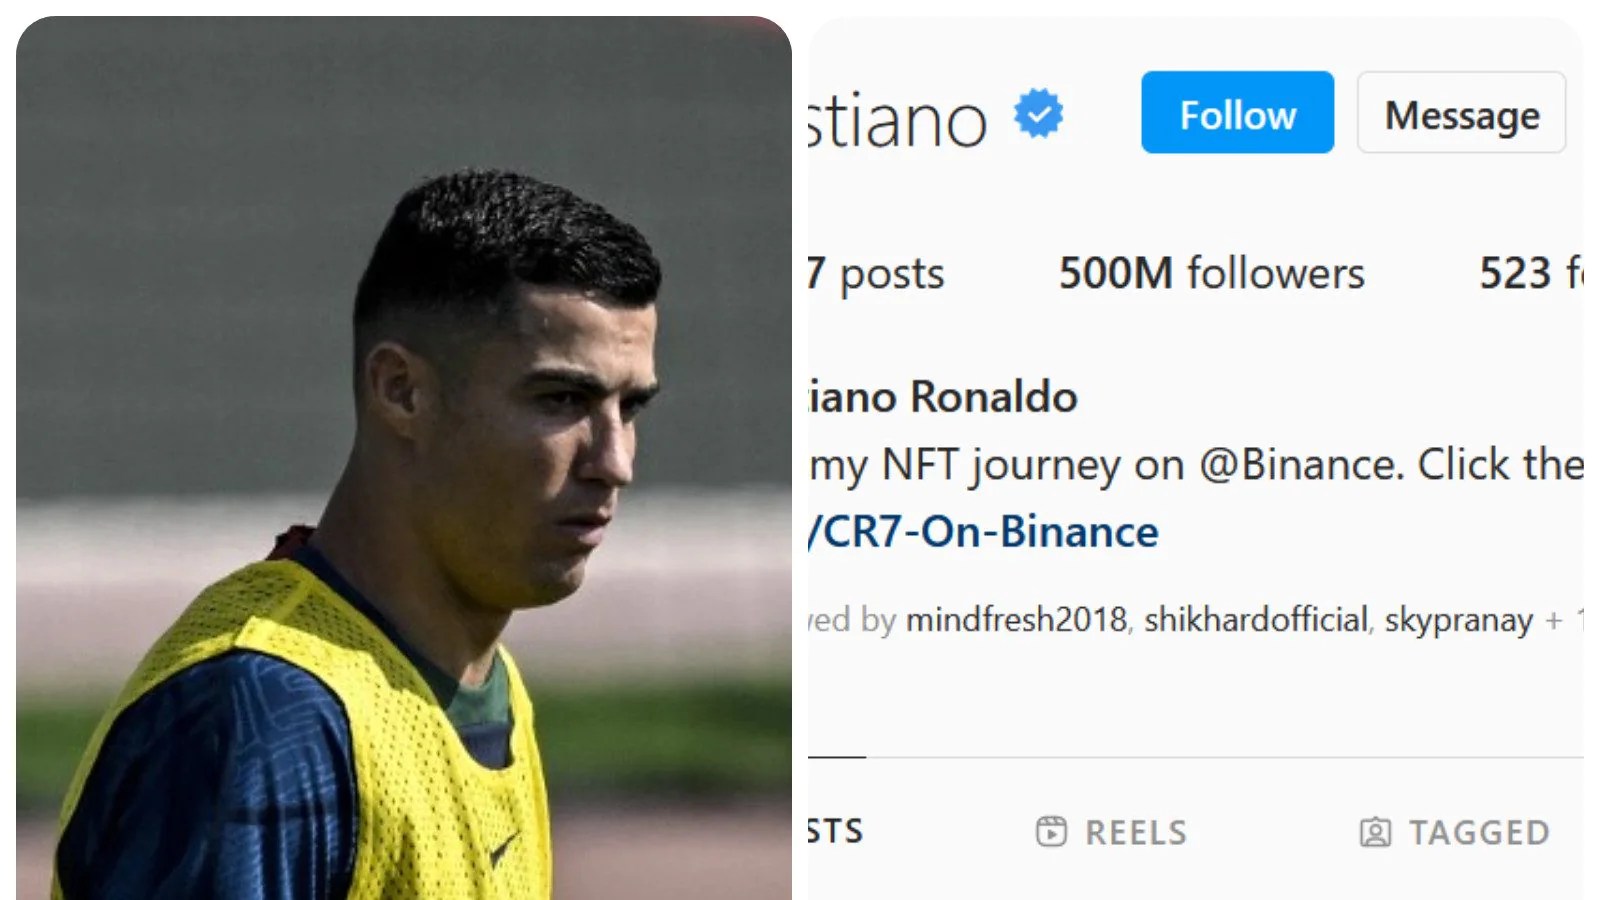 Instagram'da En Çok Takip Edilenler: FIFA Dünya Kupası'ndan önce, Cristiano Ronaldo, Lionel Messi'yi Instagram'da 500 MİLYON takipçiyi geçen ilk kişi OLMAK için işaret etti - Check OUT